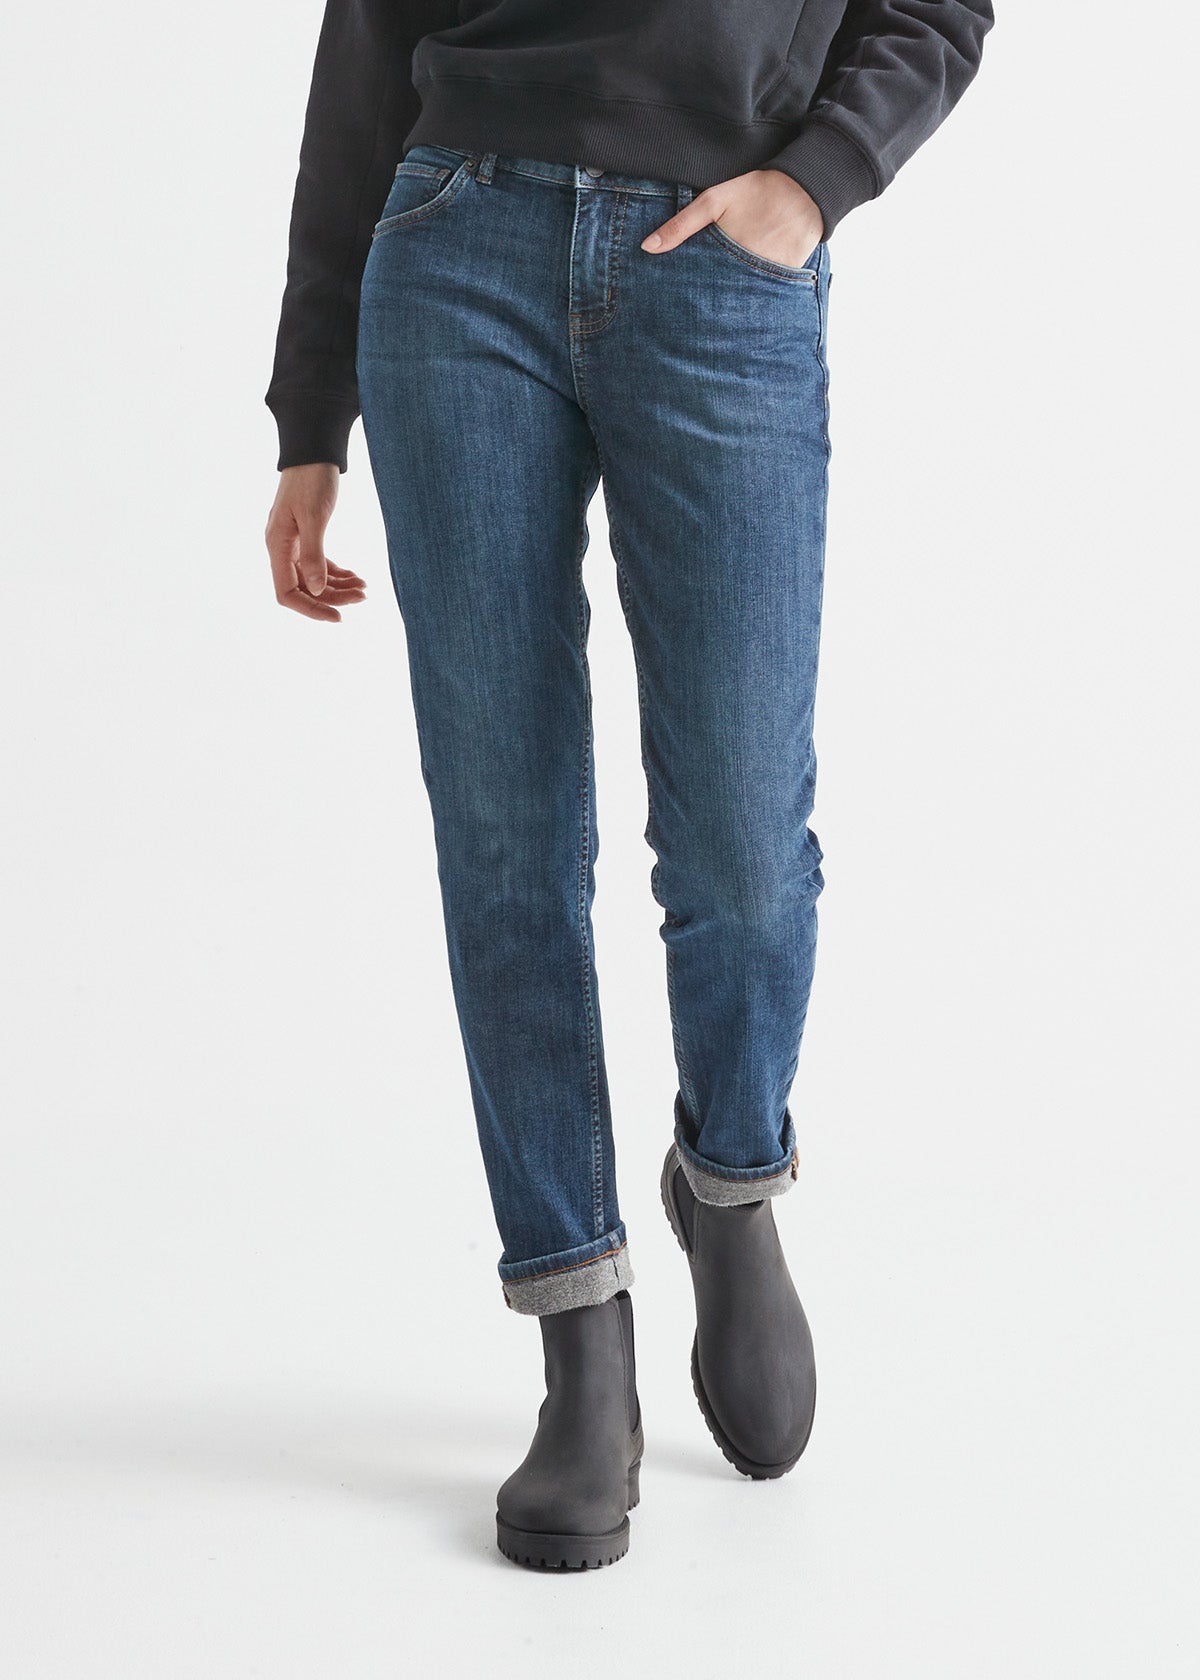 Winter Mood Fleece Lined Jeans – My Dearest